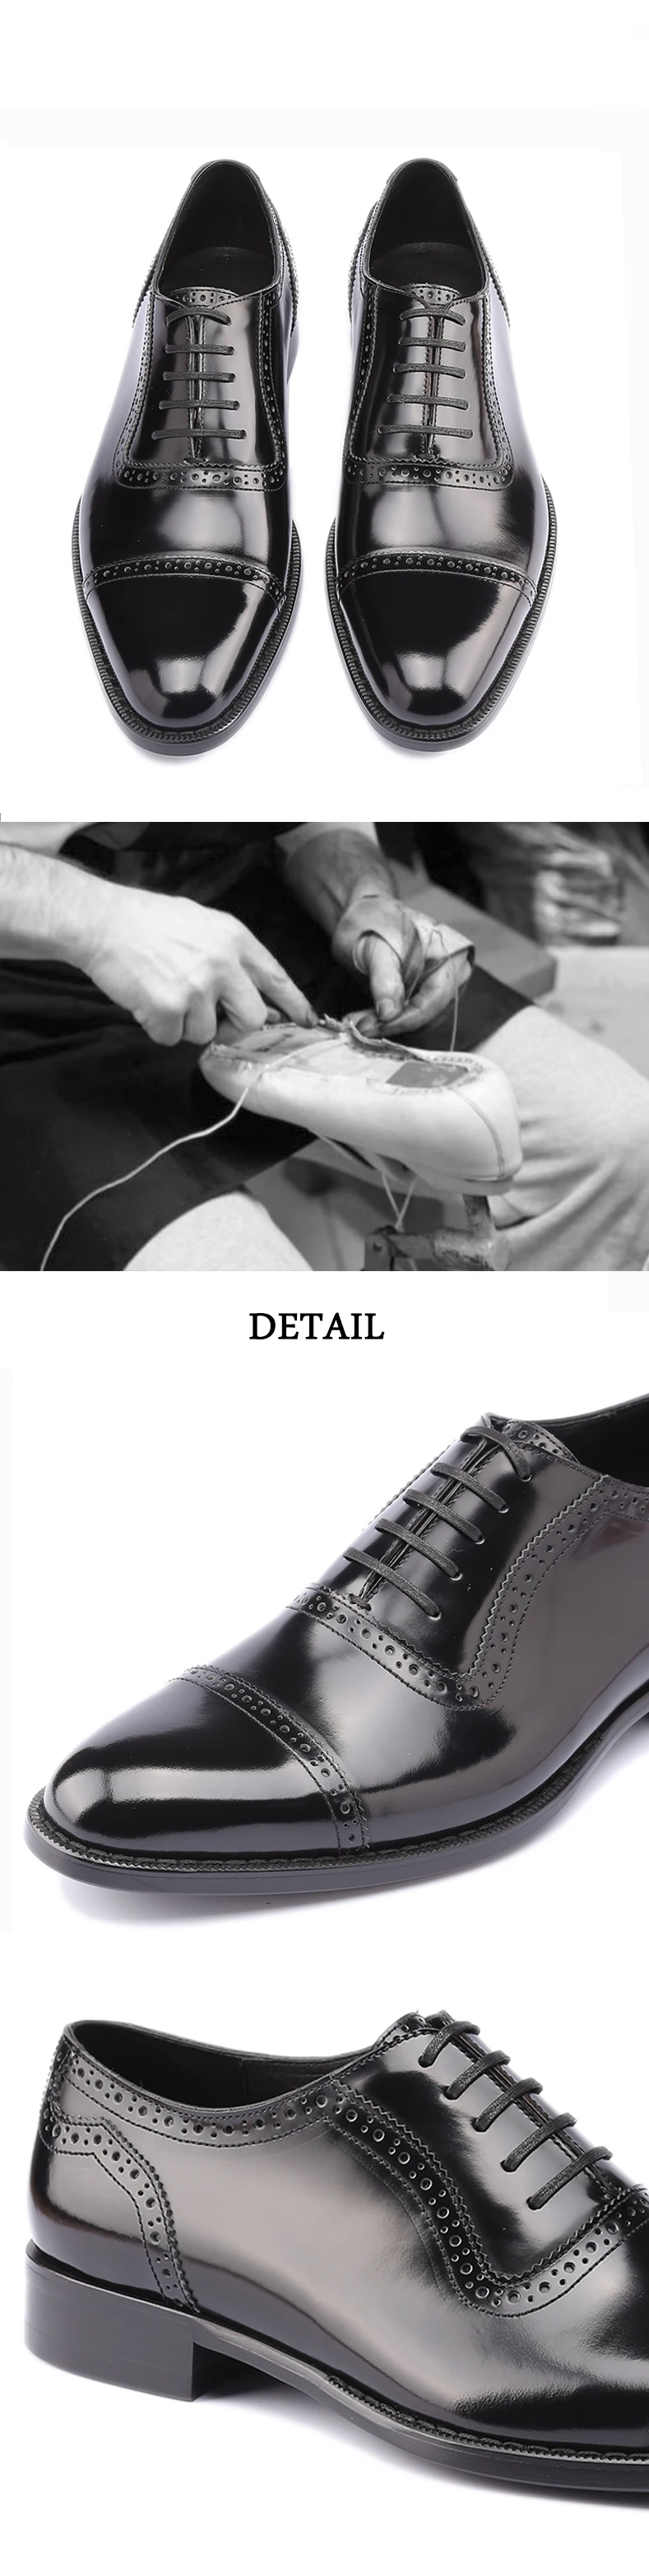 Модельные туфли; Мужские Винтажные Туфли-оксфорды из натуральной кожи в стиле ретро для свадьбы и офиса